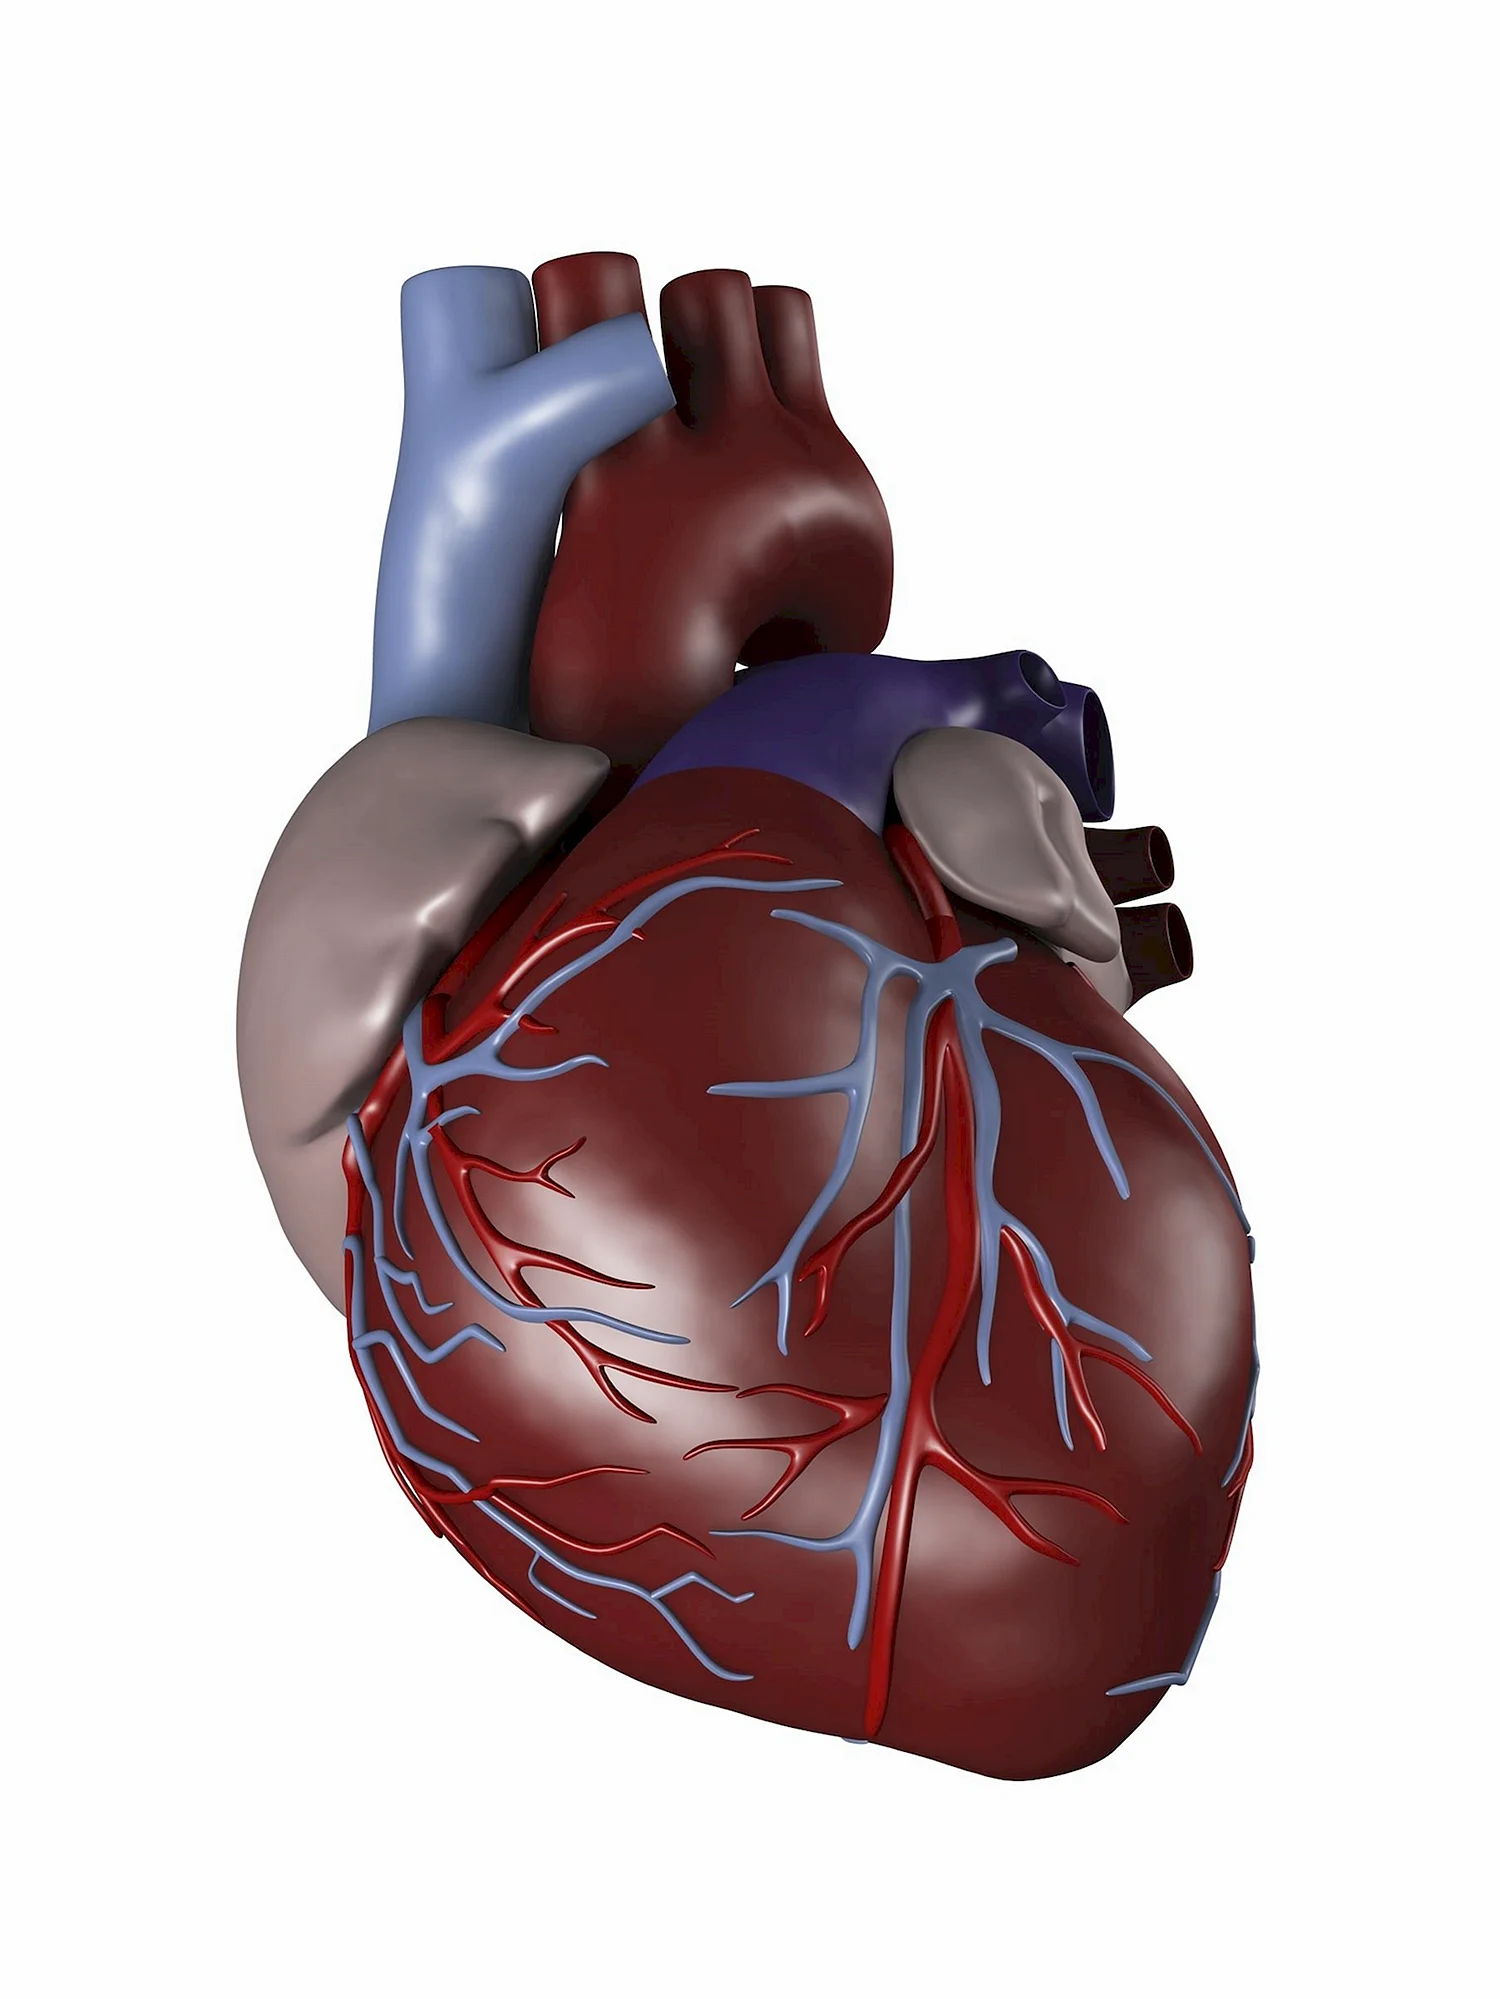 Изображение сердца человека